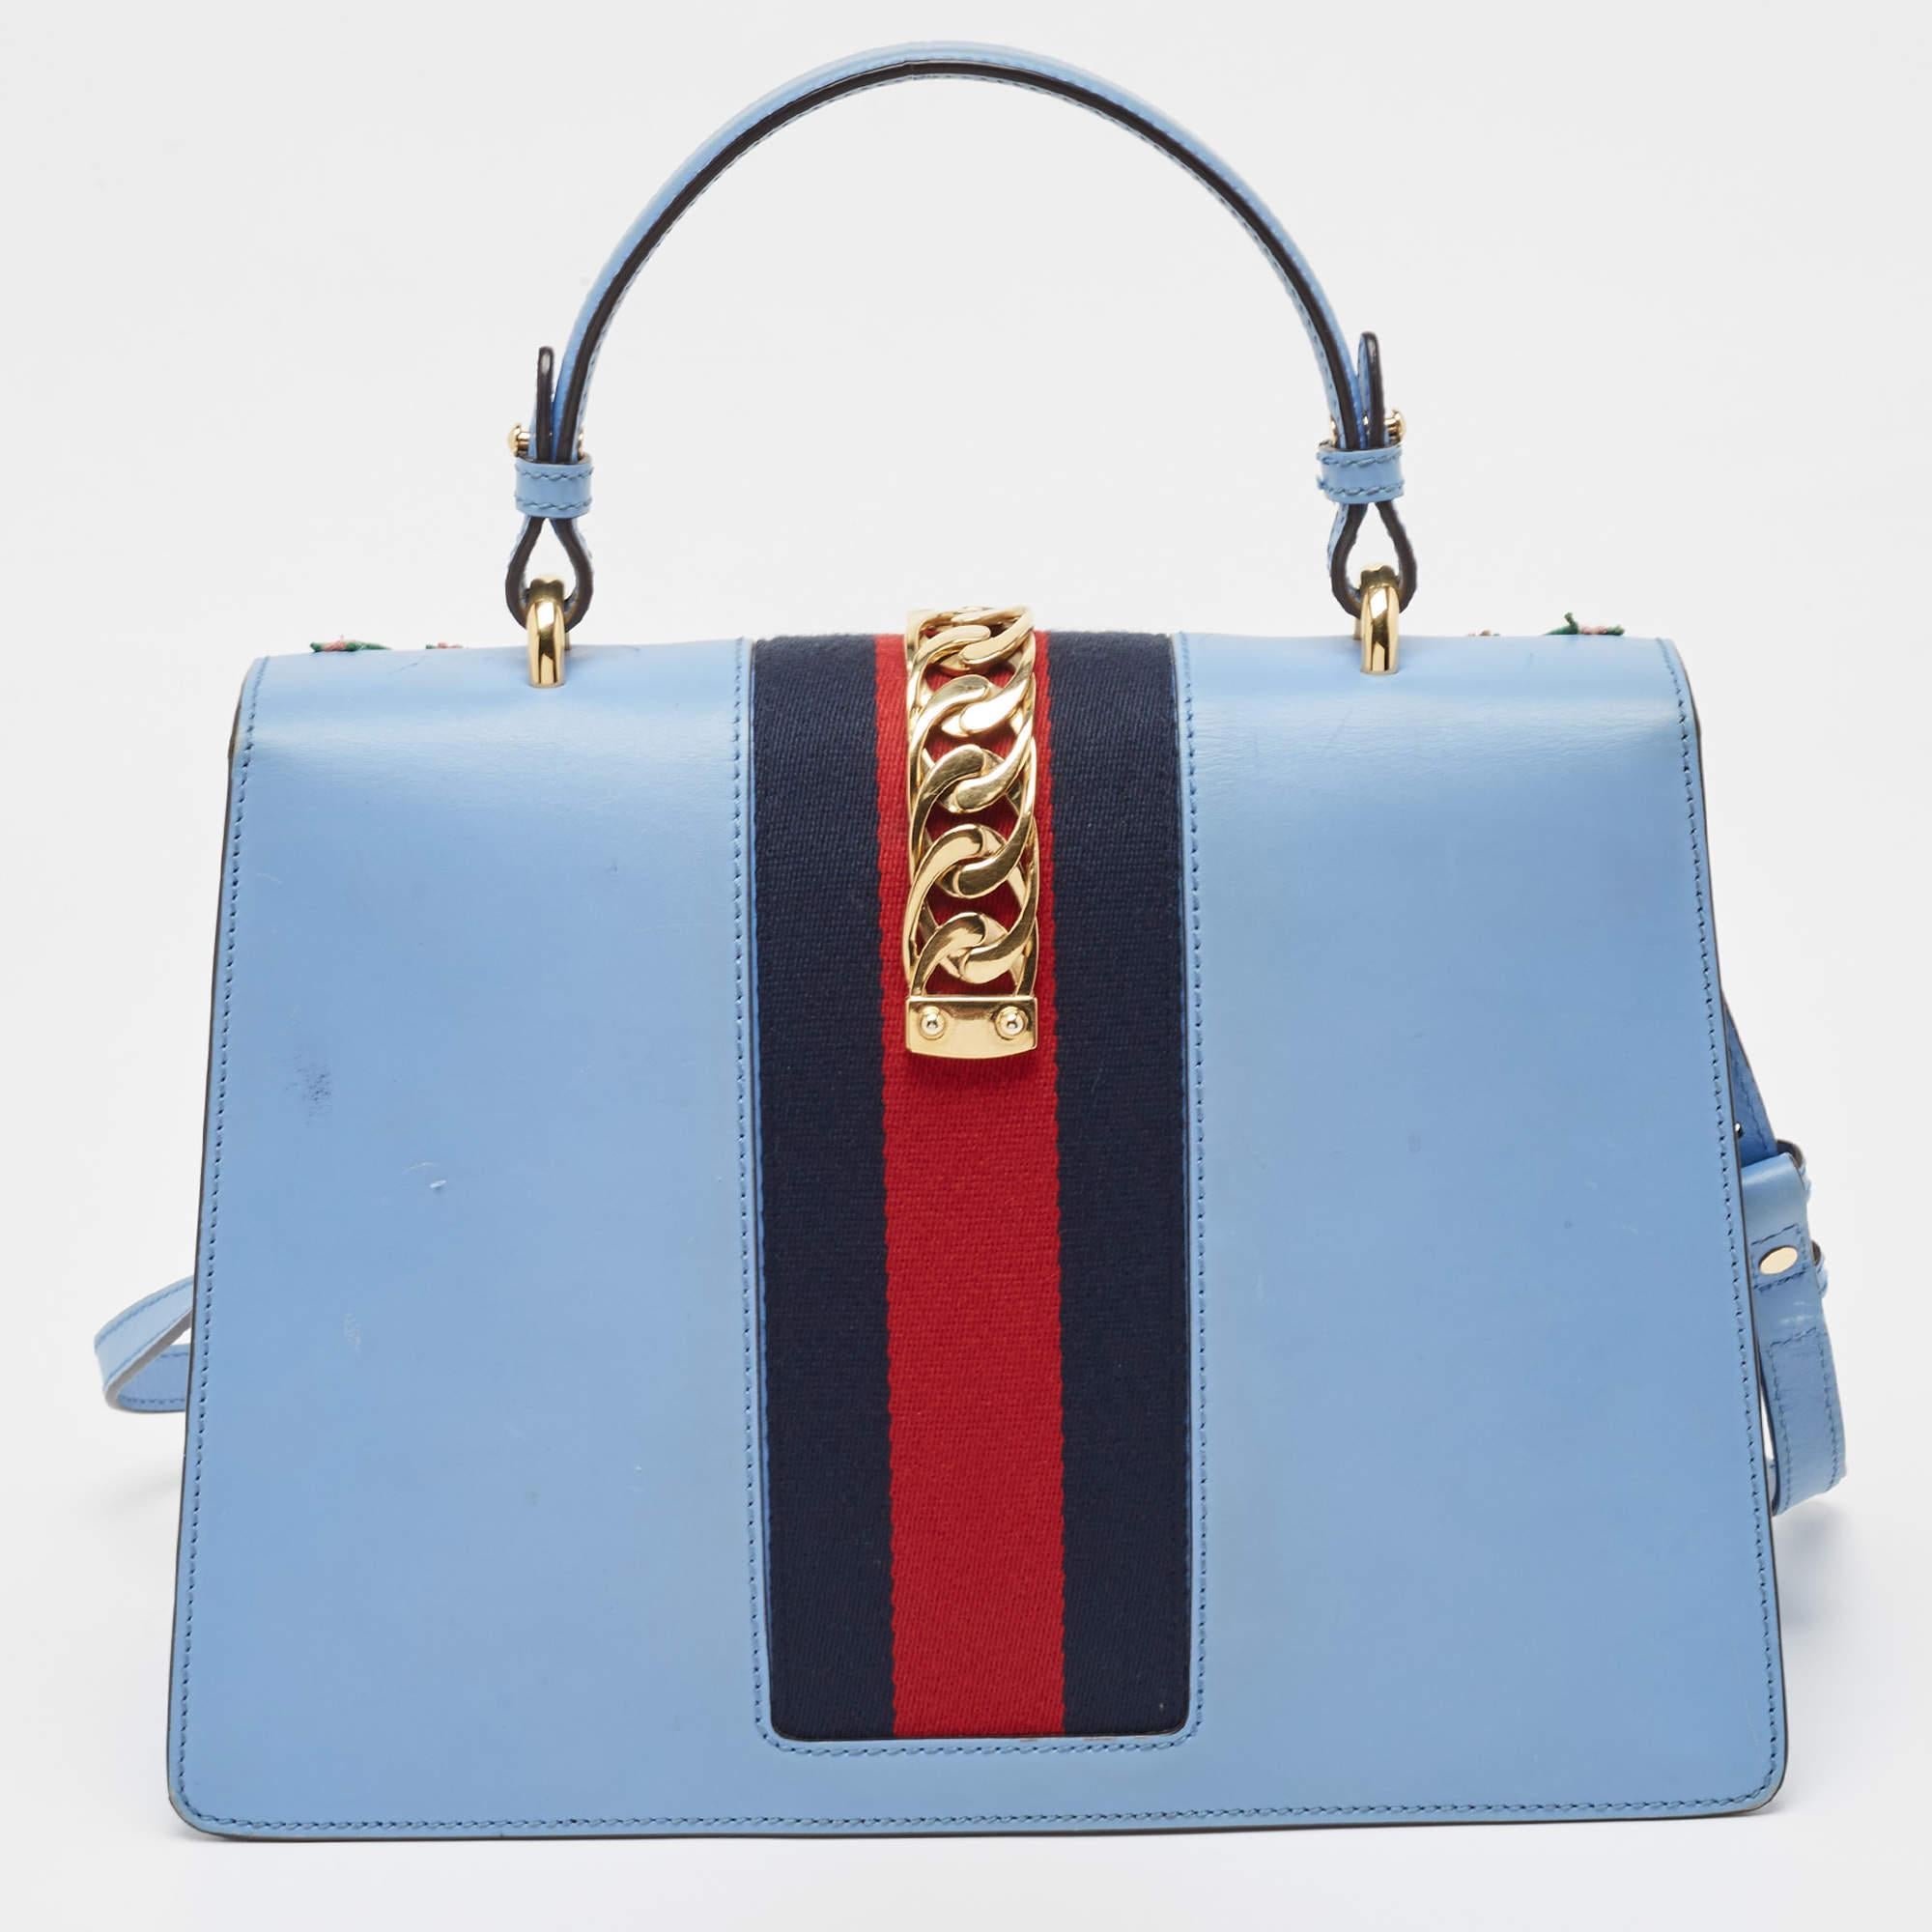 La maison Gucci nous offre ce magnifique sac Sylvie qui s'harmonisera parfaitement avec toutes vos tenues. Il a été luxueusement confectionné en cuir bleu et présente une broderie florale sur le devant, un rabat décoré d'une toile de chaîne et une